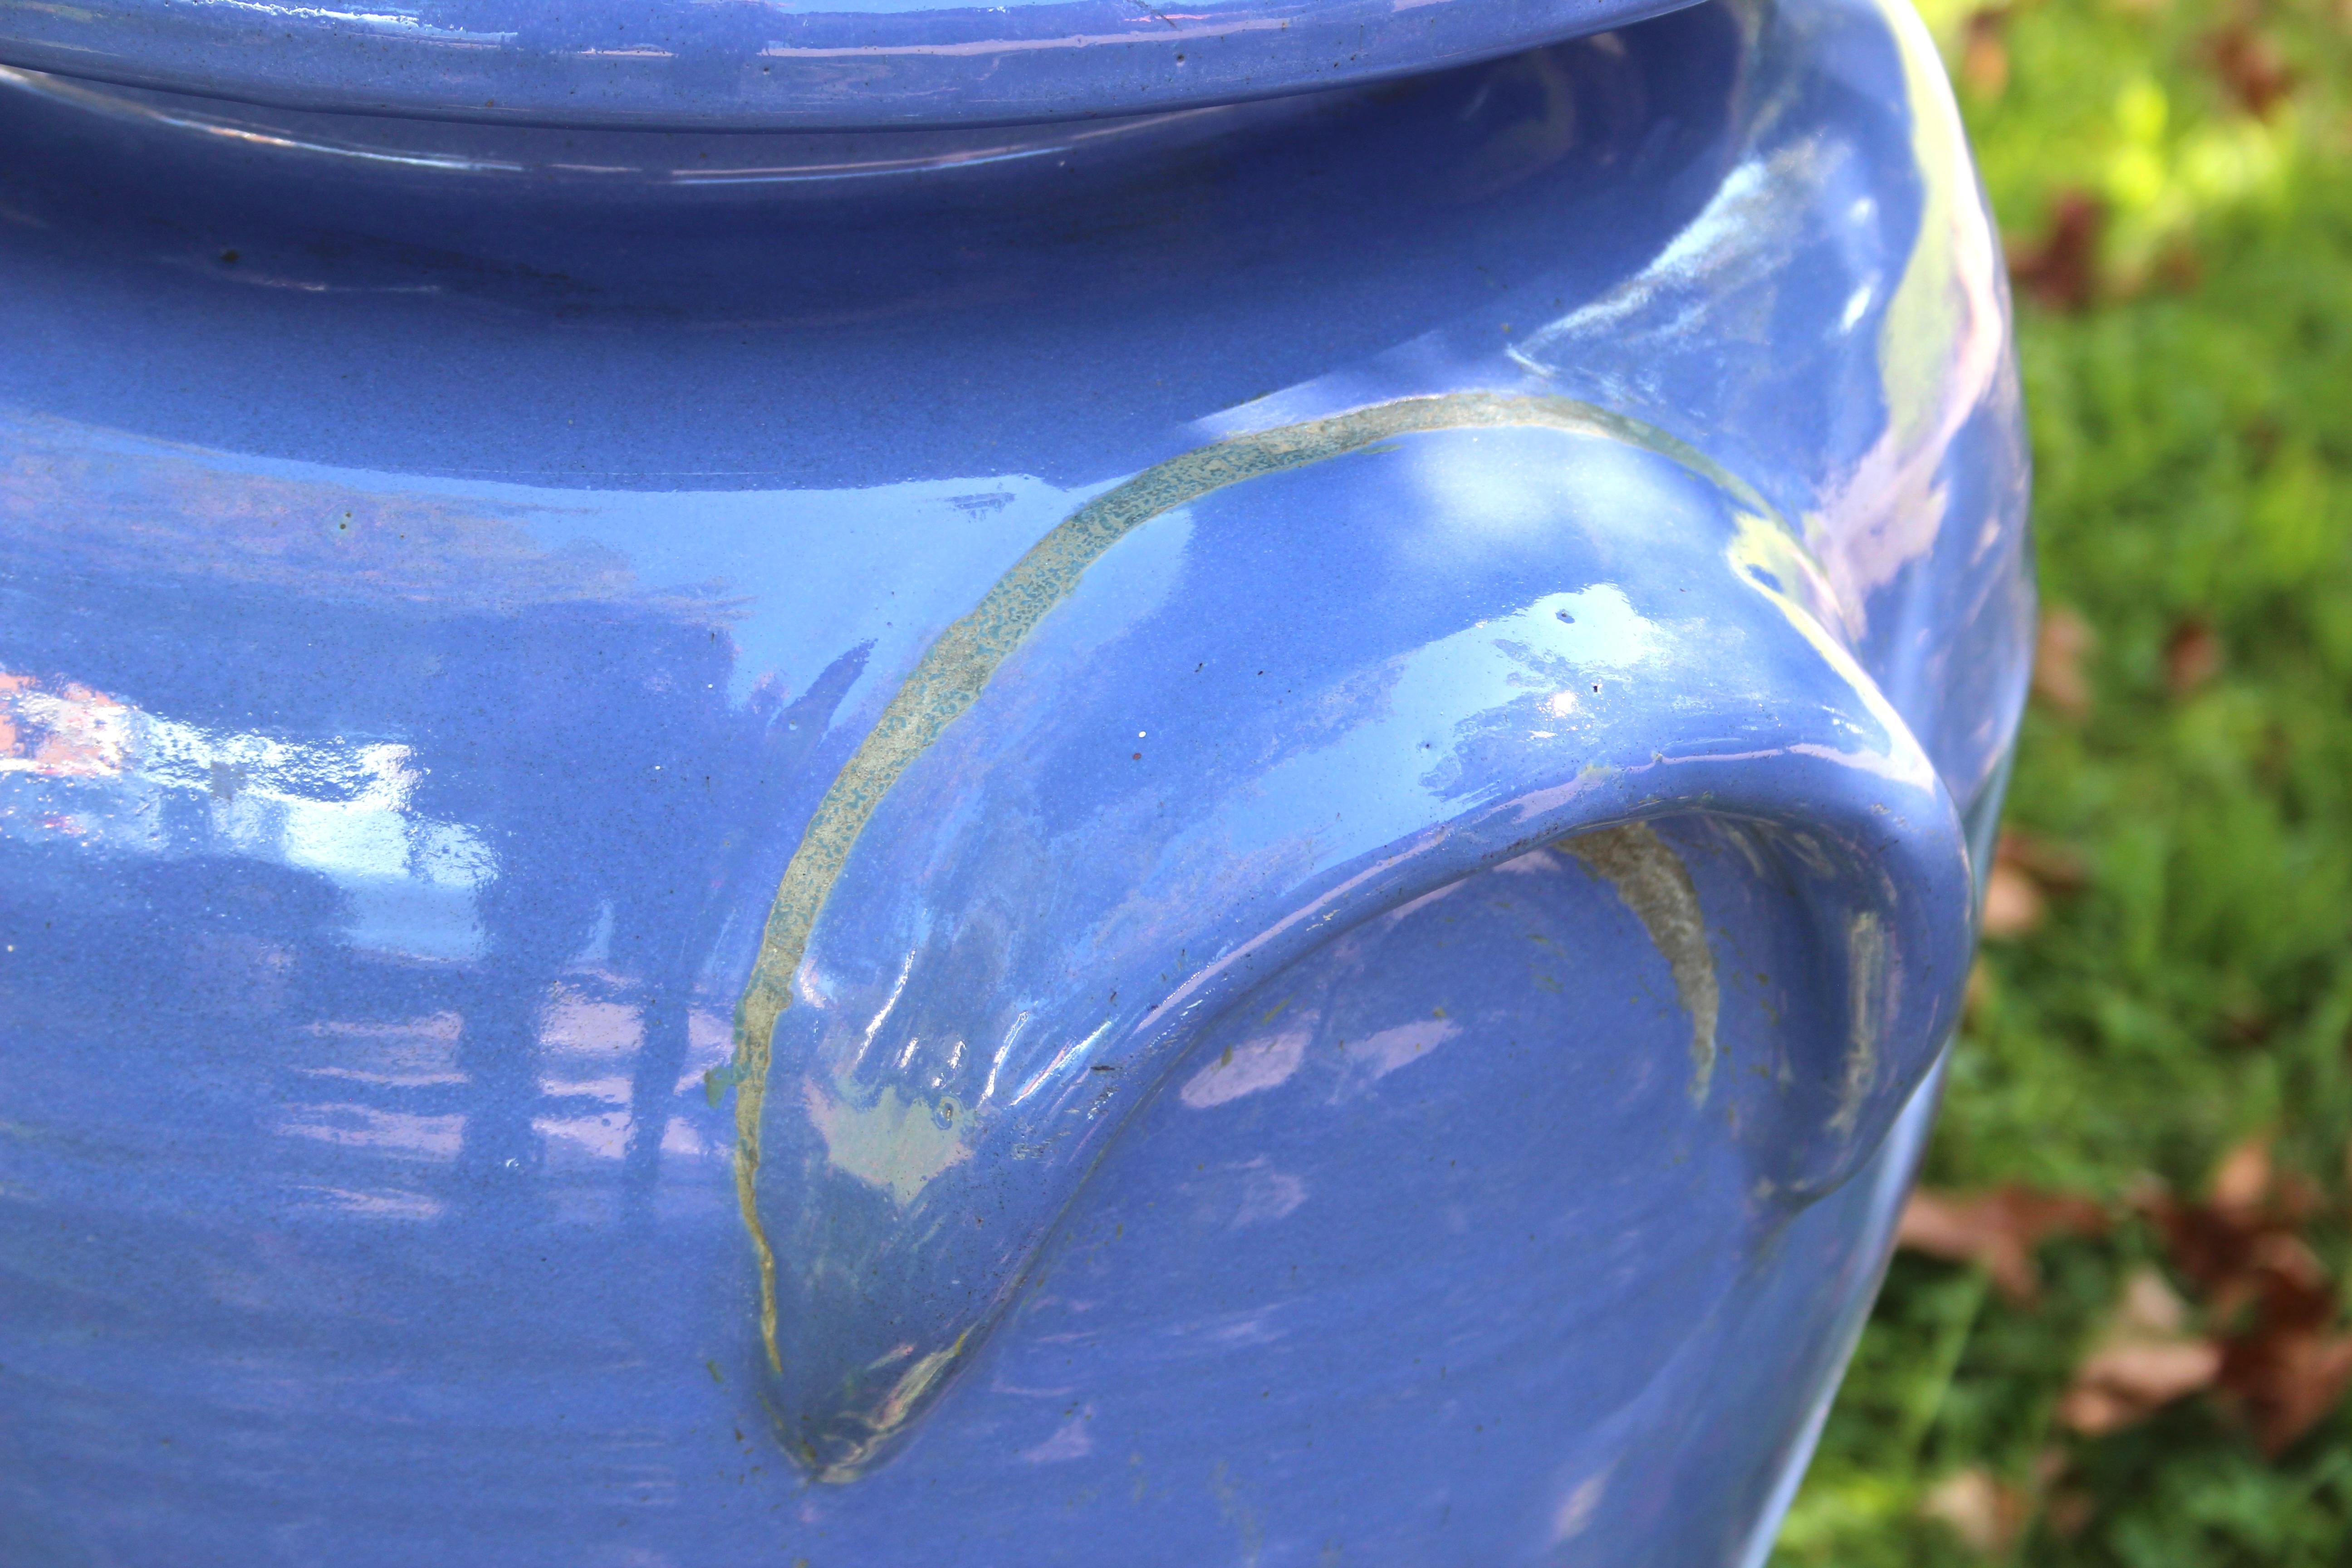 American Huge Pickrull Zanesville Stoneware Jar Urn Pottery Blue Arts & Crafts Floor Vase For Sale